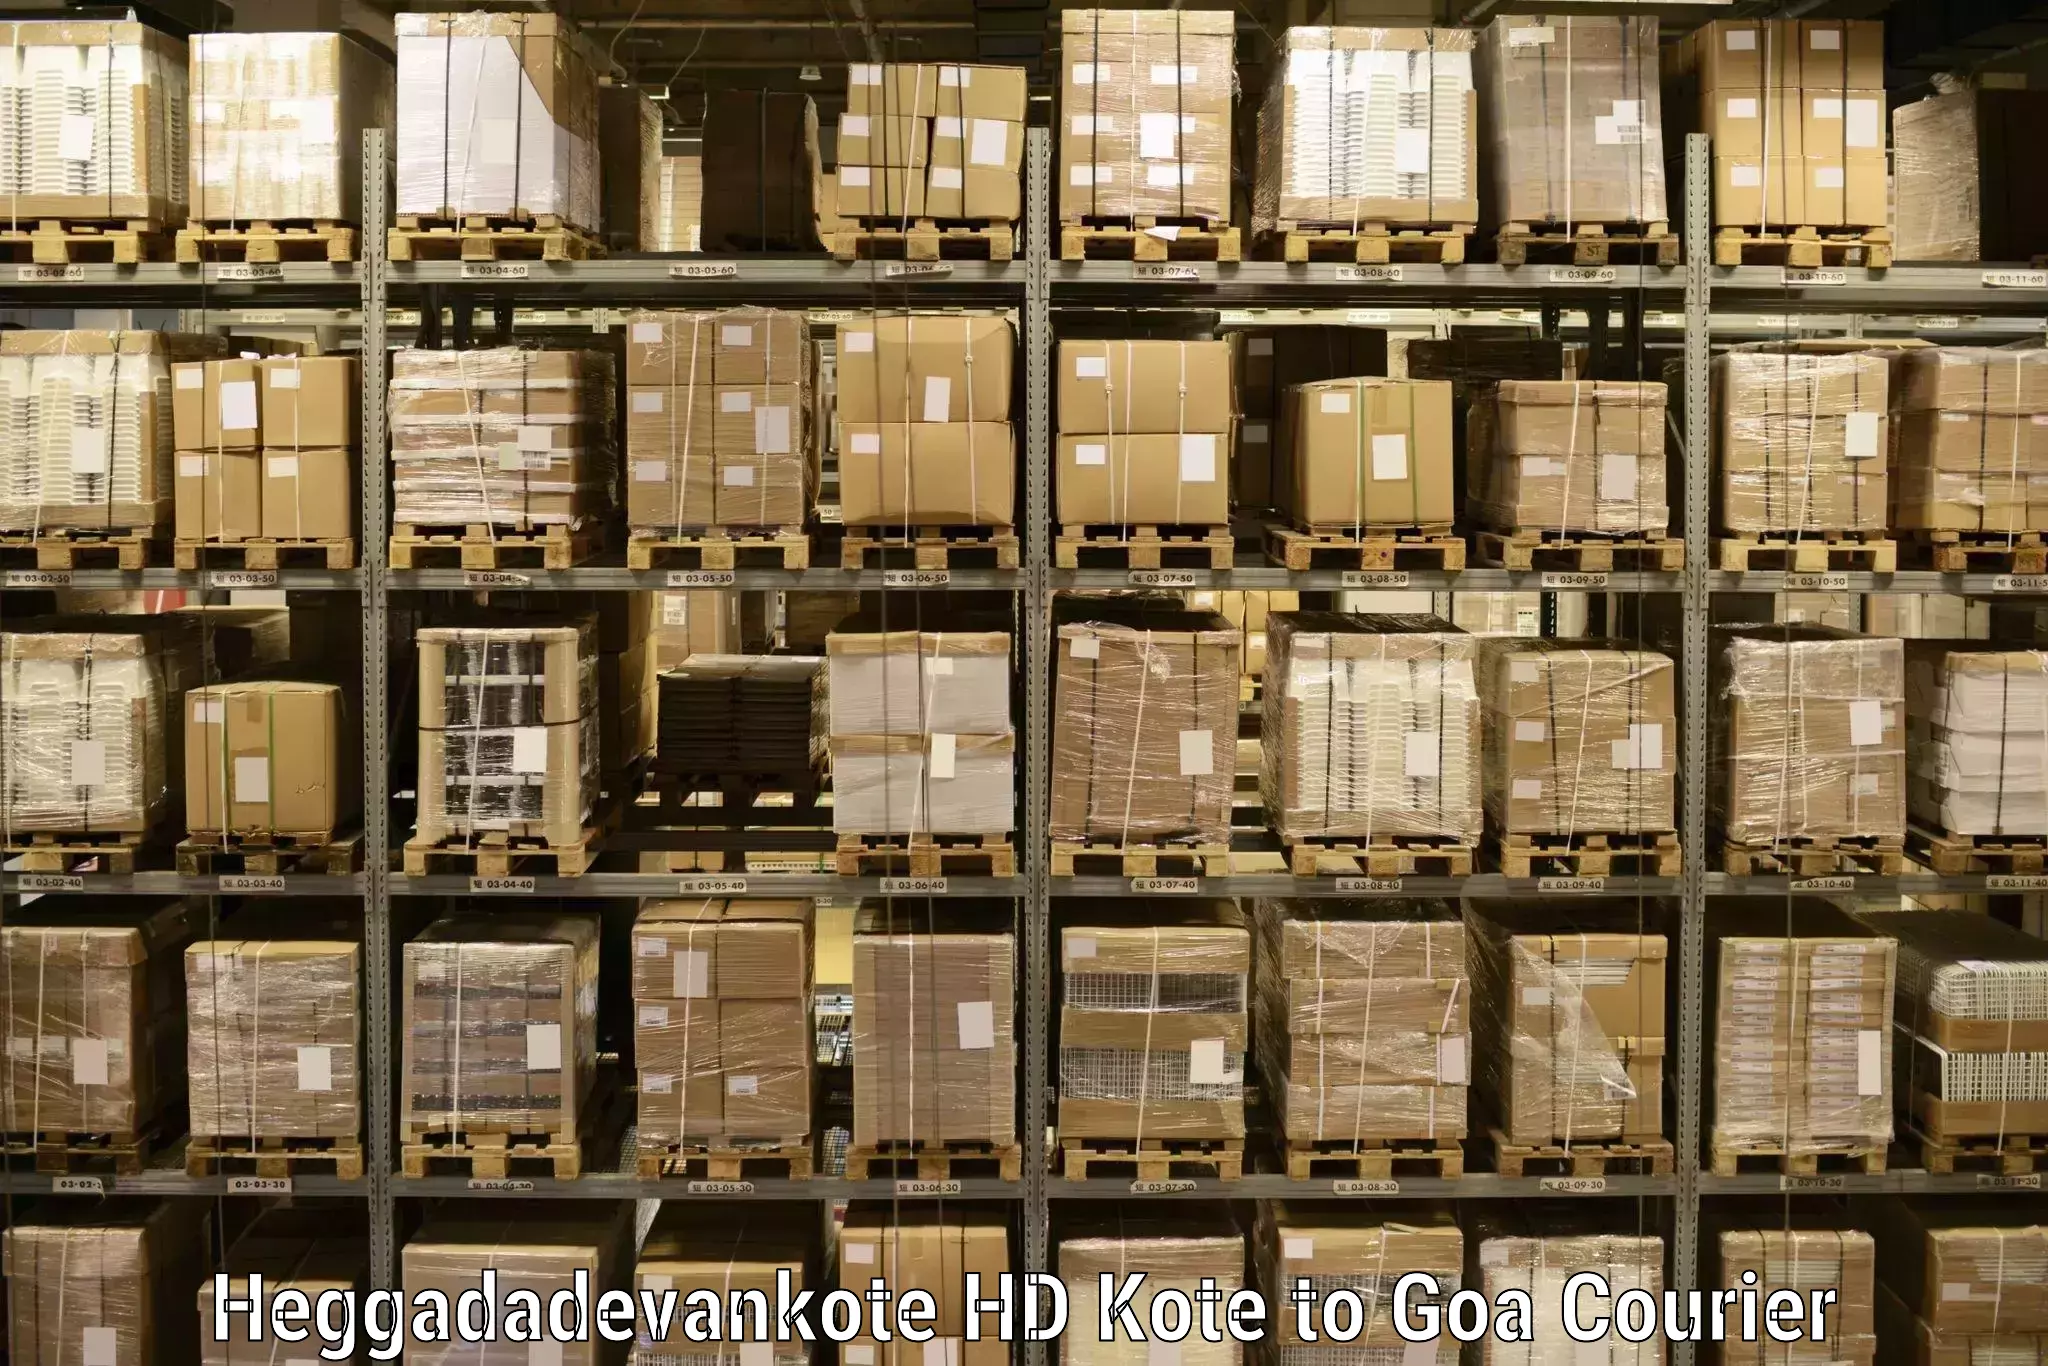 Efficient logistics management Heggadadevankote HD Kote to Mormugao Port